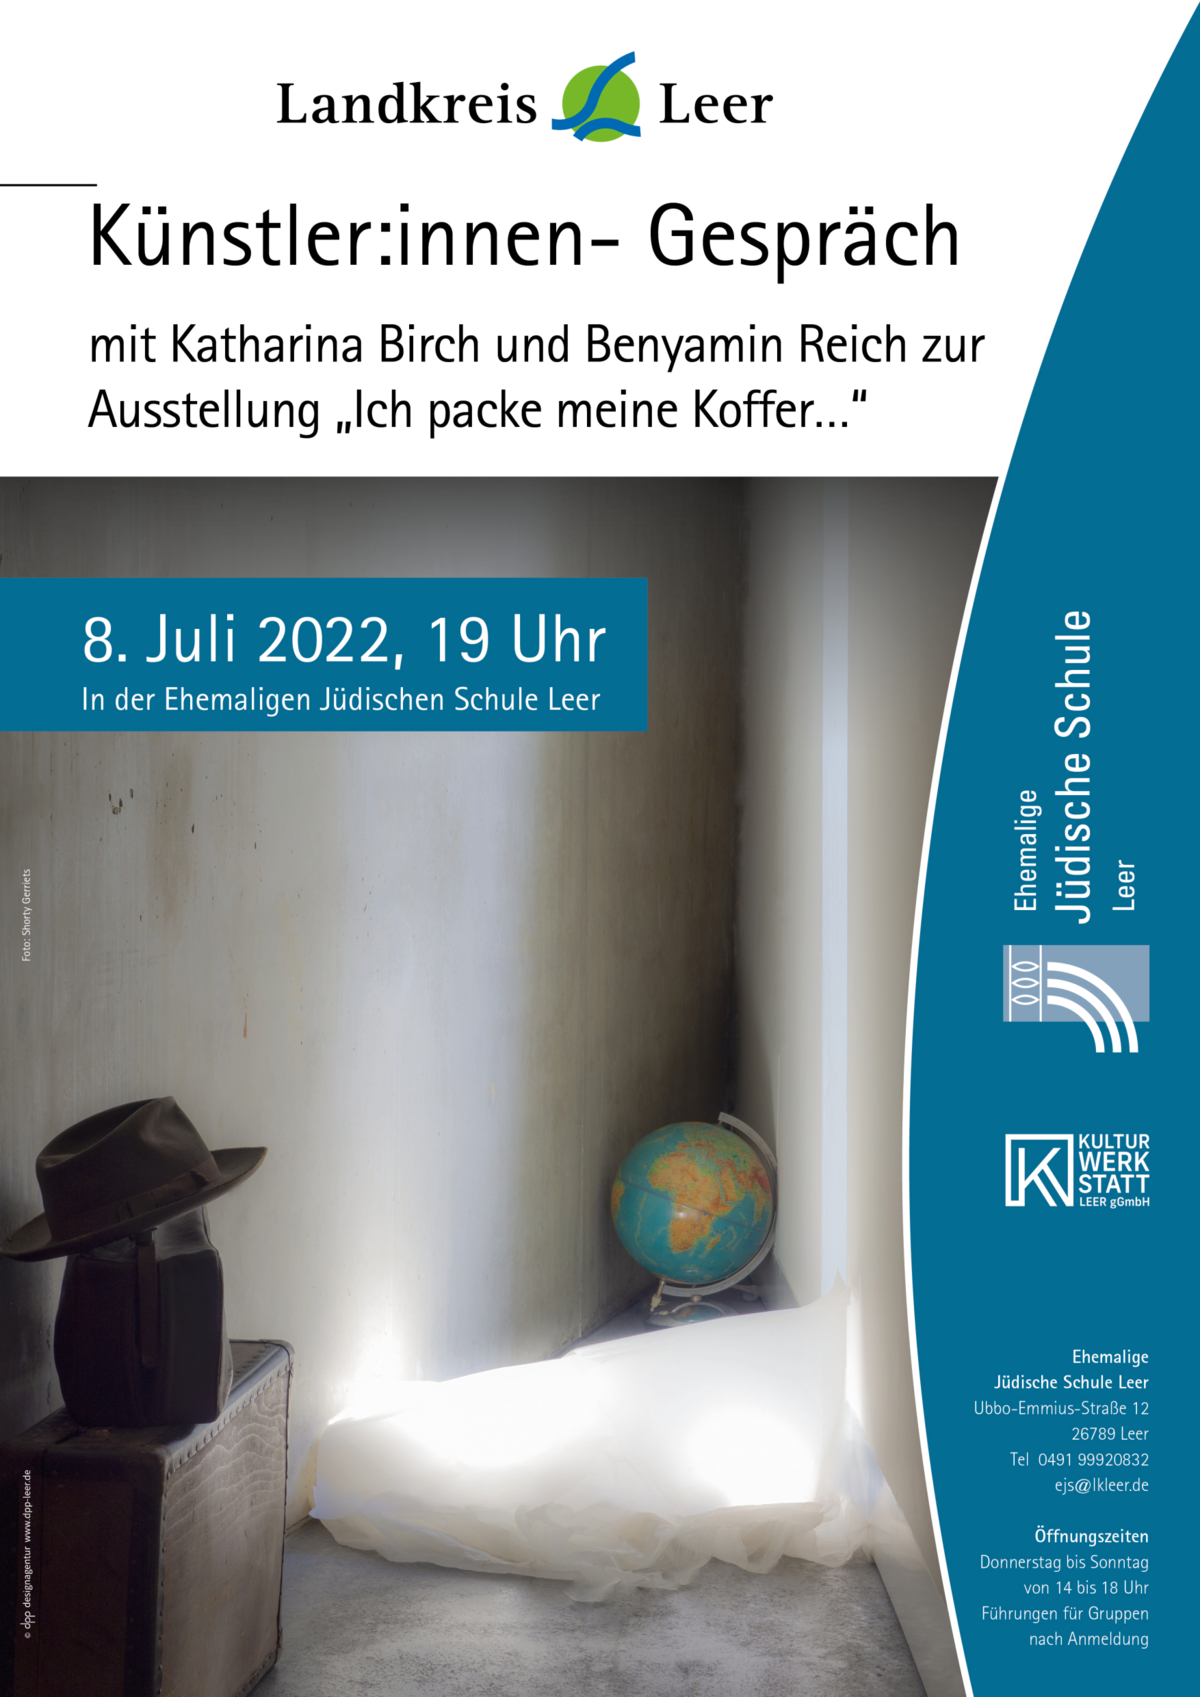 Bild vergrößern: Zu sehen ist das Plakat zum Künstler:innen-Gespräch mit Katharina Birch und Benyamin Reich zur Ausstellung "Ich packe meine Koffer..."  am 8. Juli 2022.